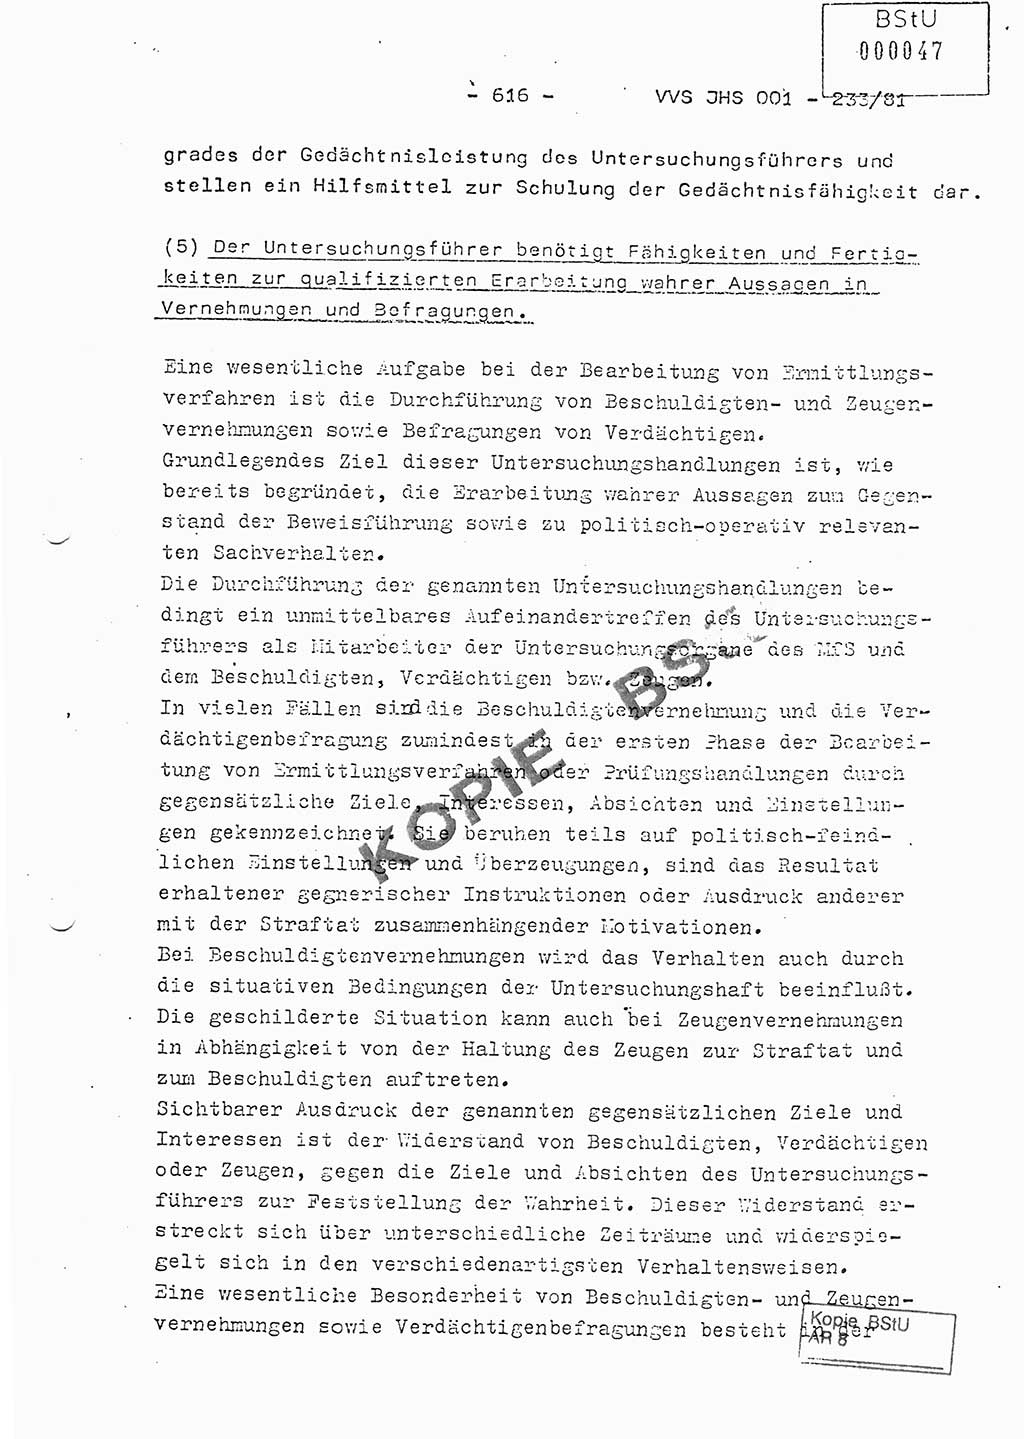 Dissertation Oberstleutnant Horst Zank (JHS), Oberstleutnant Dr. Karl-Heinz Knoblauch (JHS), Oberstleutnant Gustav-Adolf Kowalewski (HA Ⅸ), Oberstleutnant Wolfgang Plötner (HA Ⅸ), Ministerium für Staatssicherheit (MfS) [Deutsche Demokratische Republik (DDR)], Juristische Hochschule (JHS), Vertrauliche Verschlußsache (VVS) o001-233/81, Potsdam 1981, Blatt 616 (Diss. MfS DDR JHS VVS o001-233/81 1981, Bl. 616)